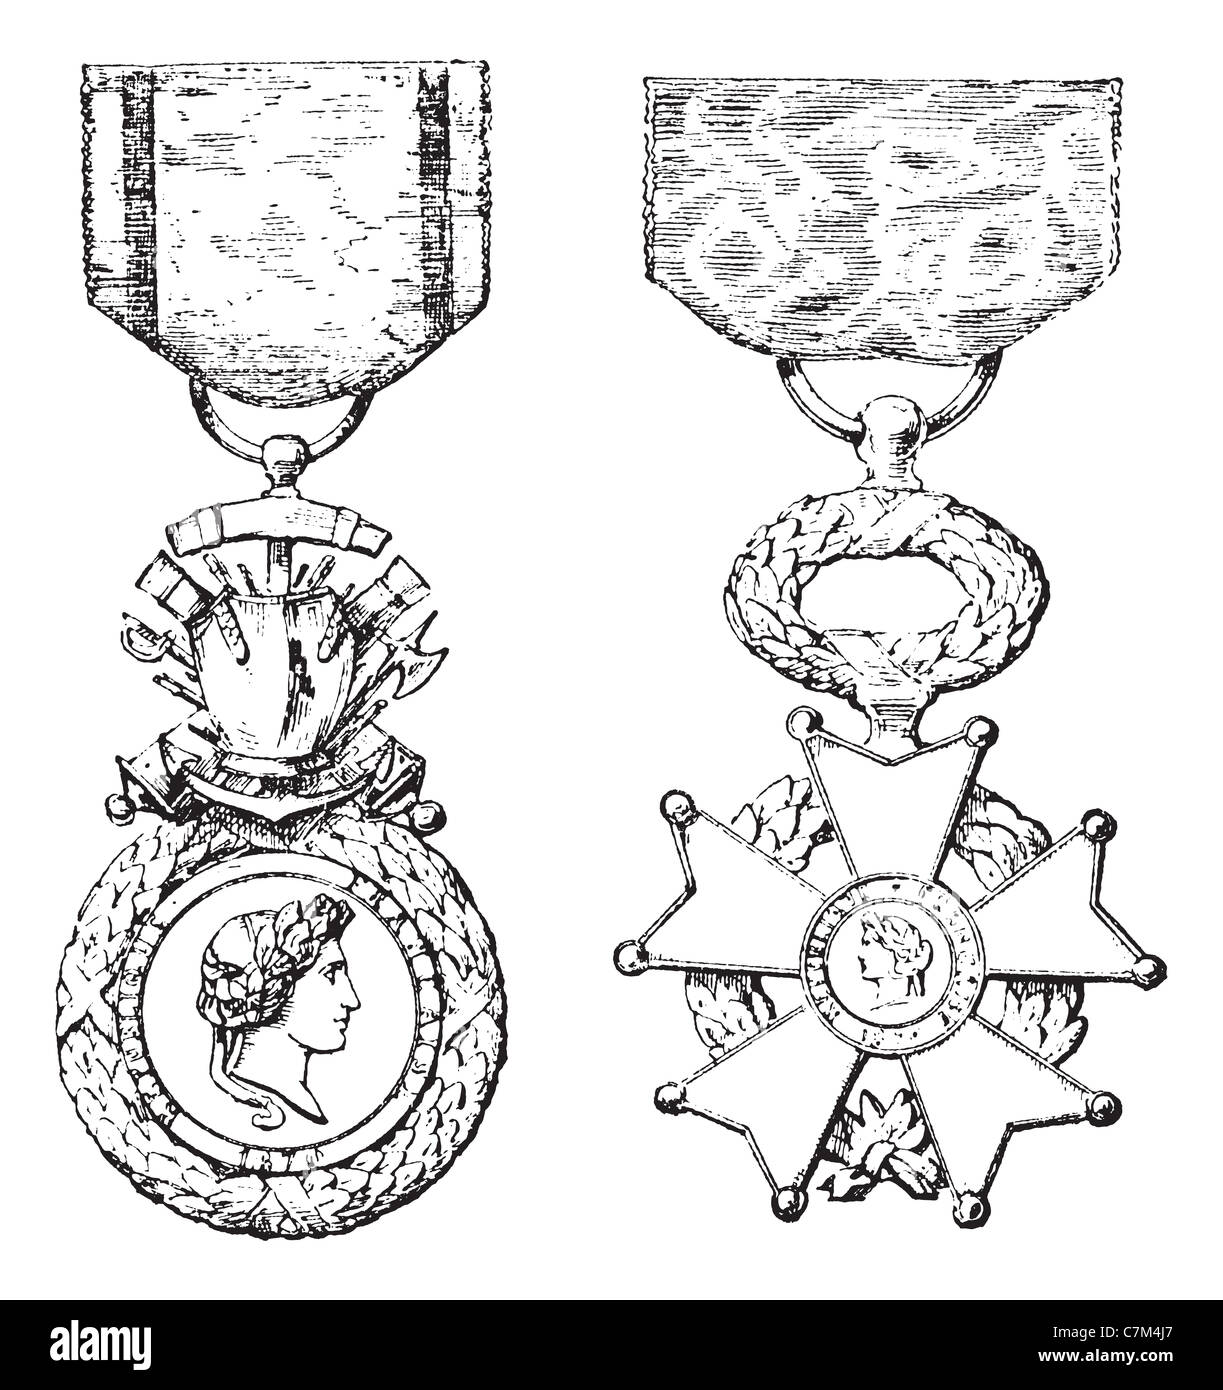 Medal of honor military hi